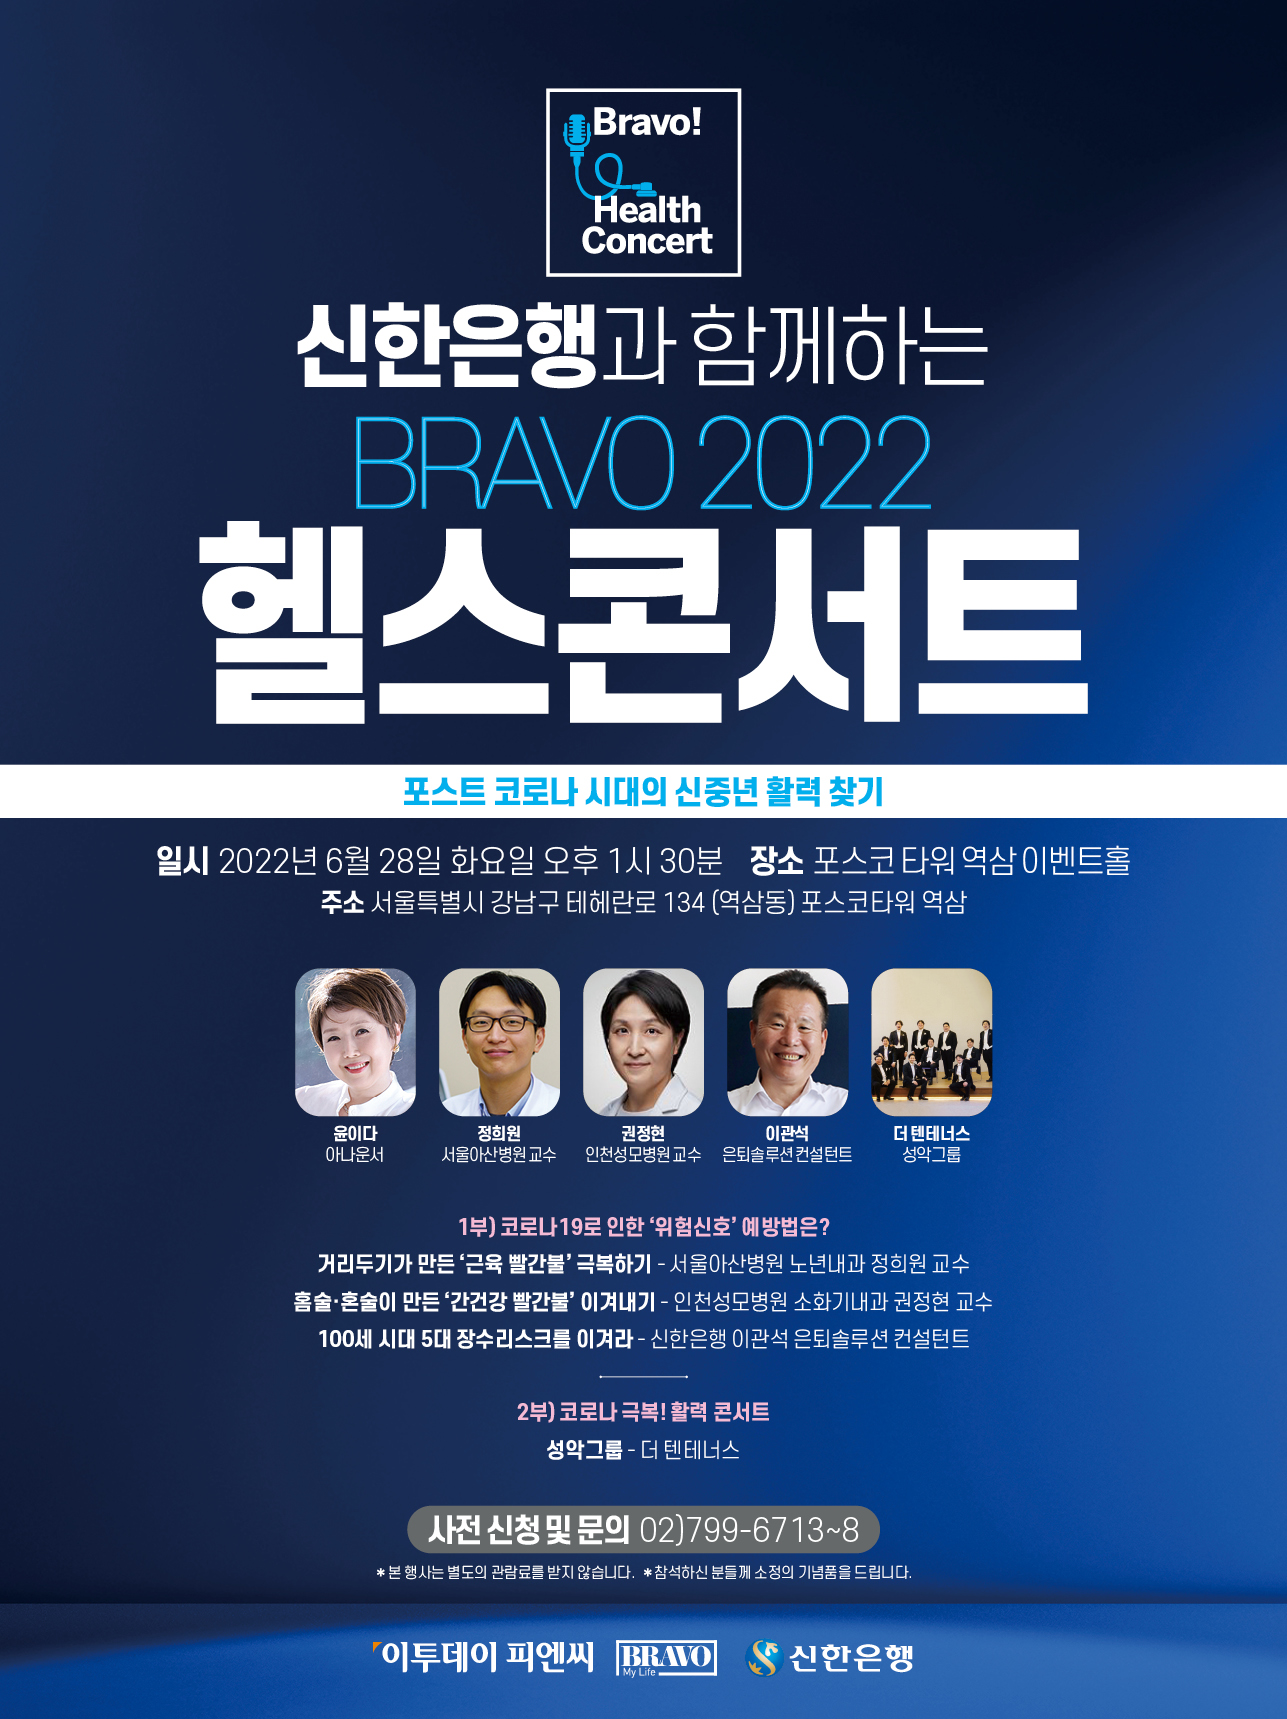 신한은행과 함께하는 'BRAVO! 2022 헬스콘서트'